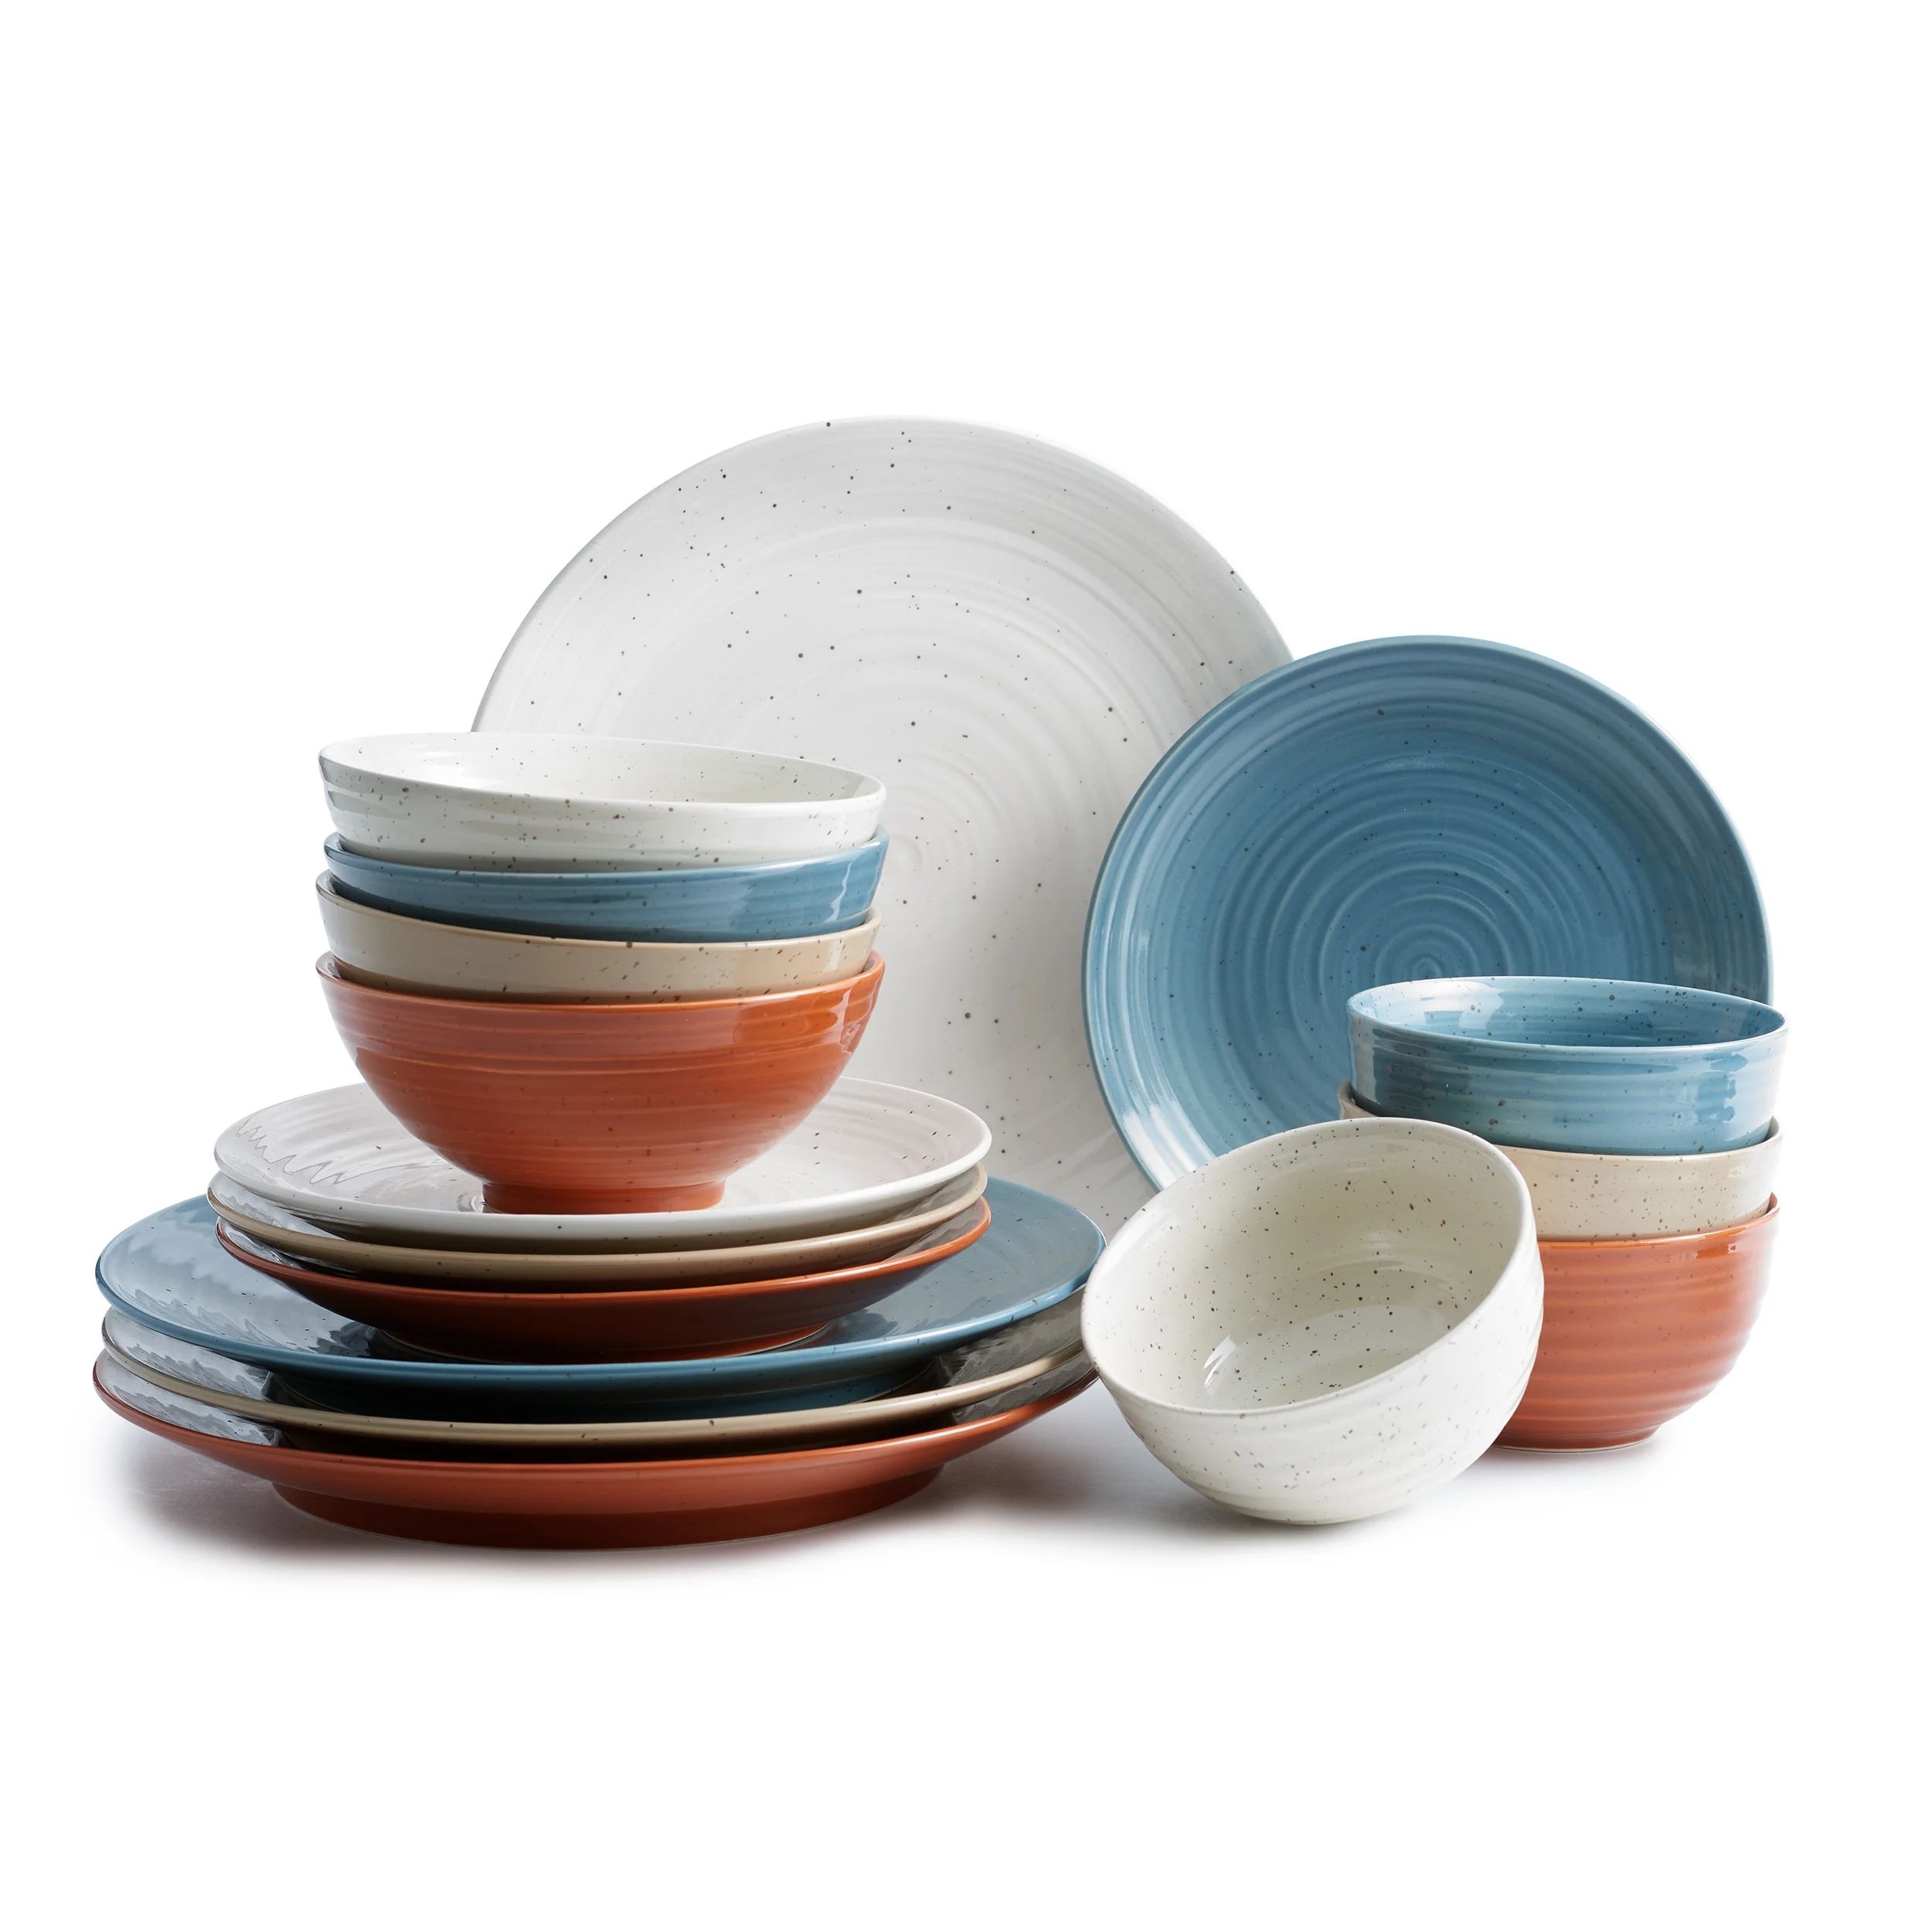 Sango Siterra Painter's Palette Stoneware Dinnerware Set, 16-piece, Cream/Blue/Orange/Beige | Walmart (US)